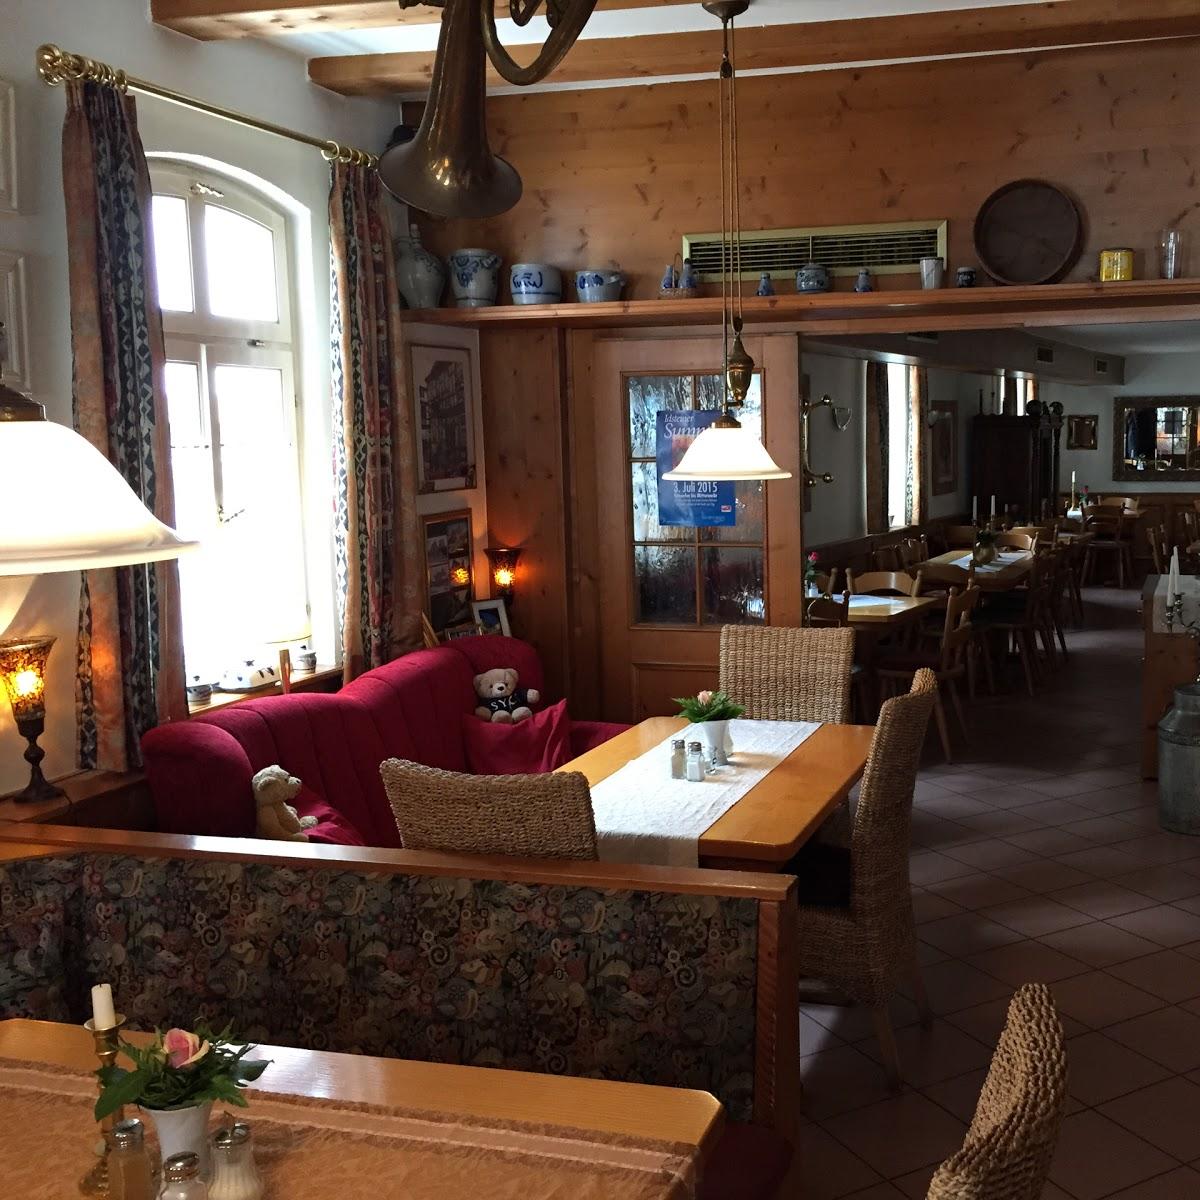 Restaurant "La Strada Ristorante" in  Idstein